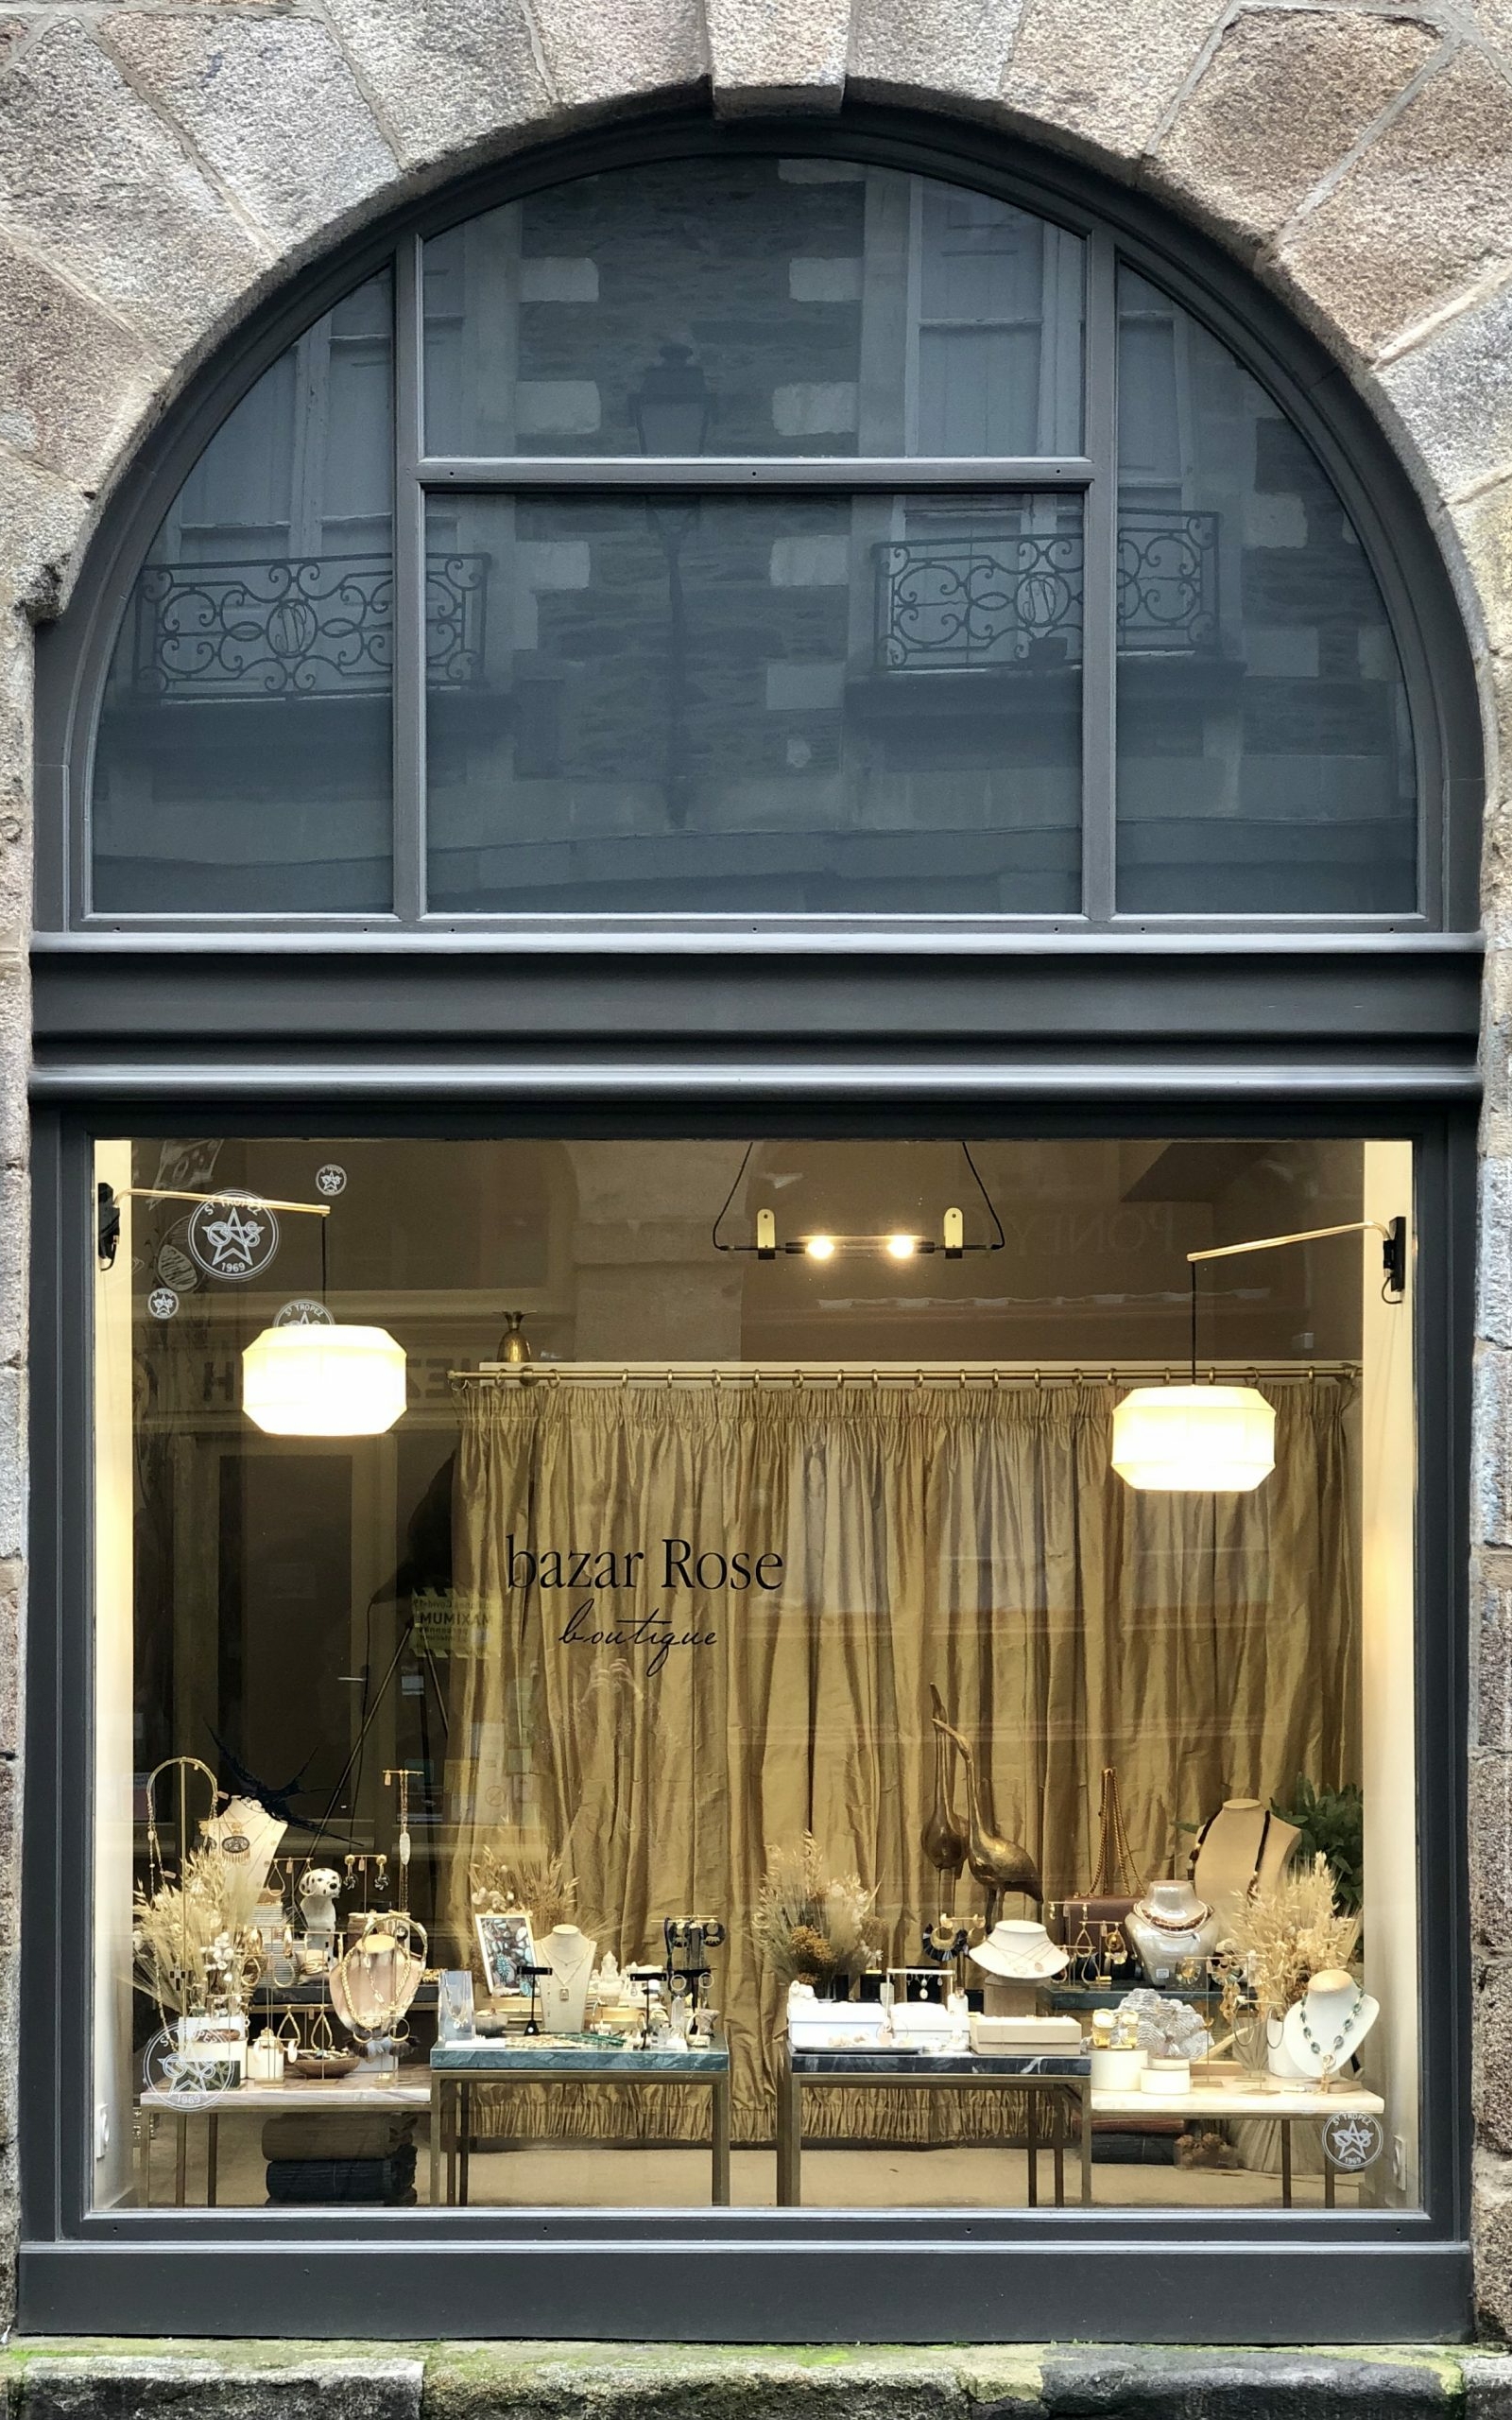 Rénovation de la façade de la boutique Bazar Rose à Rennes.